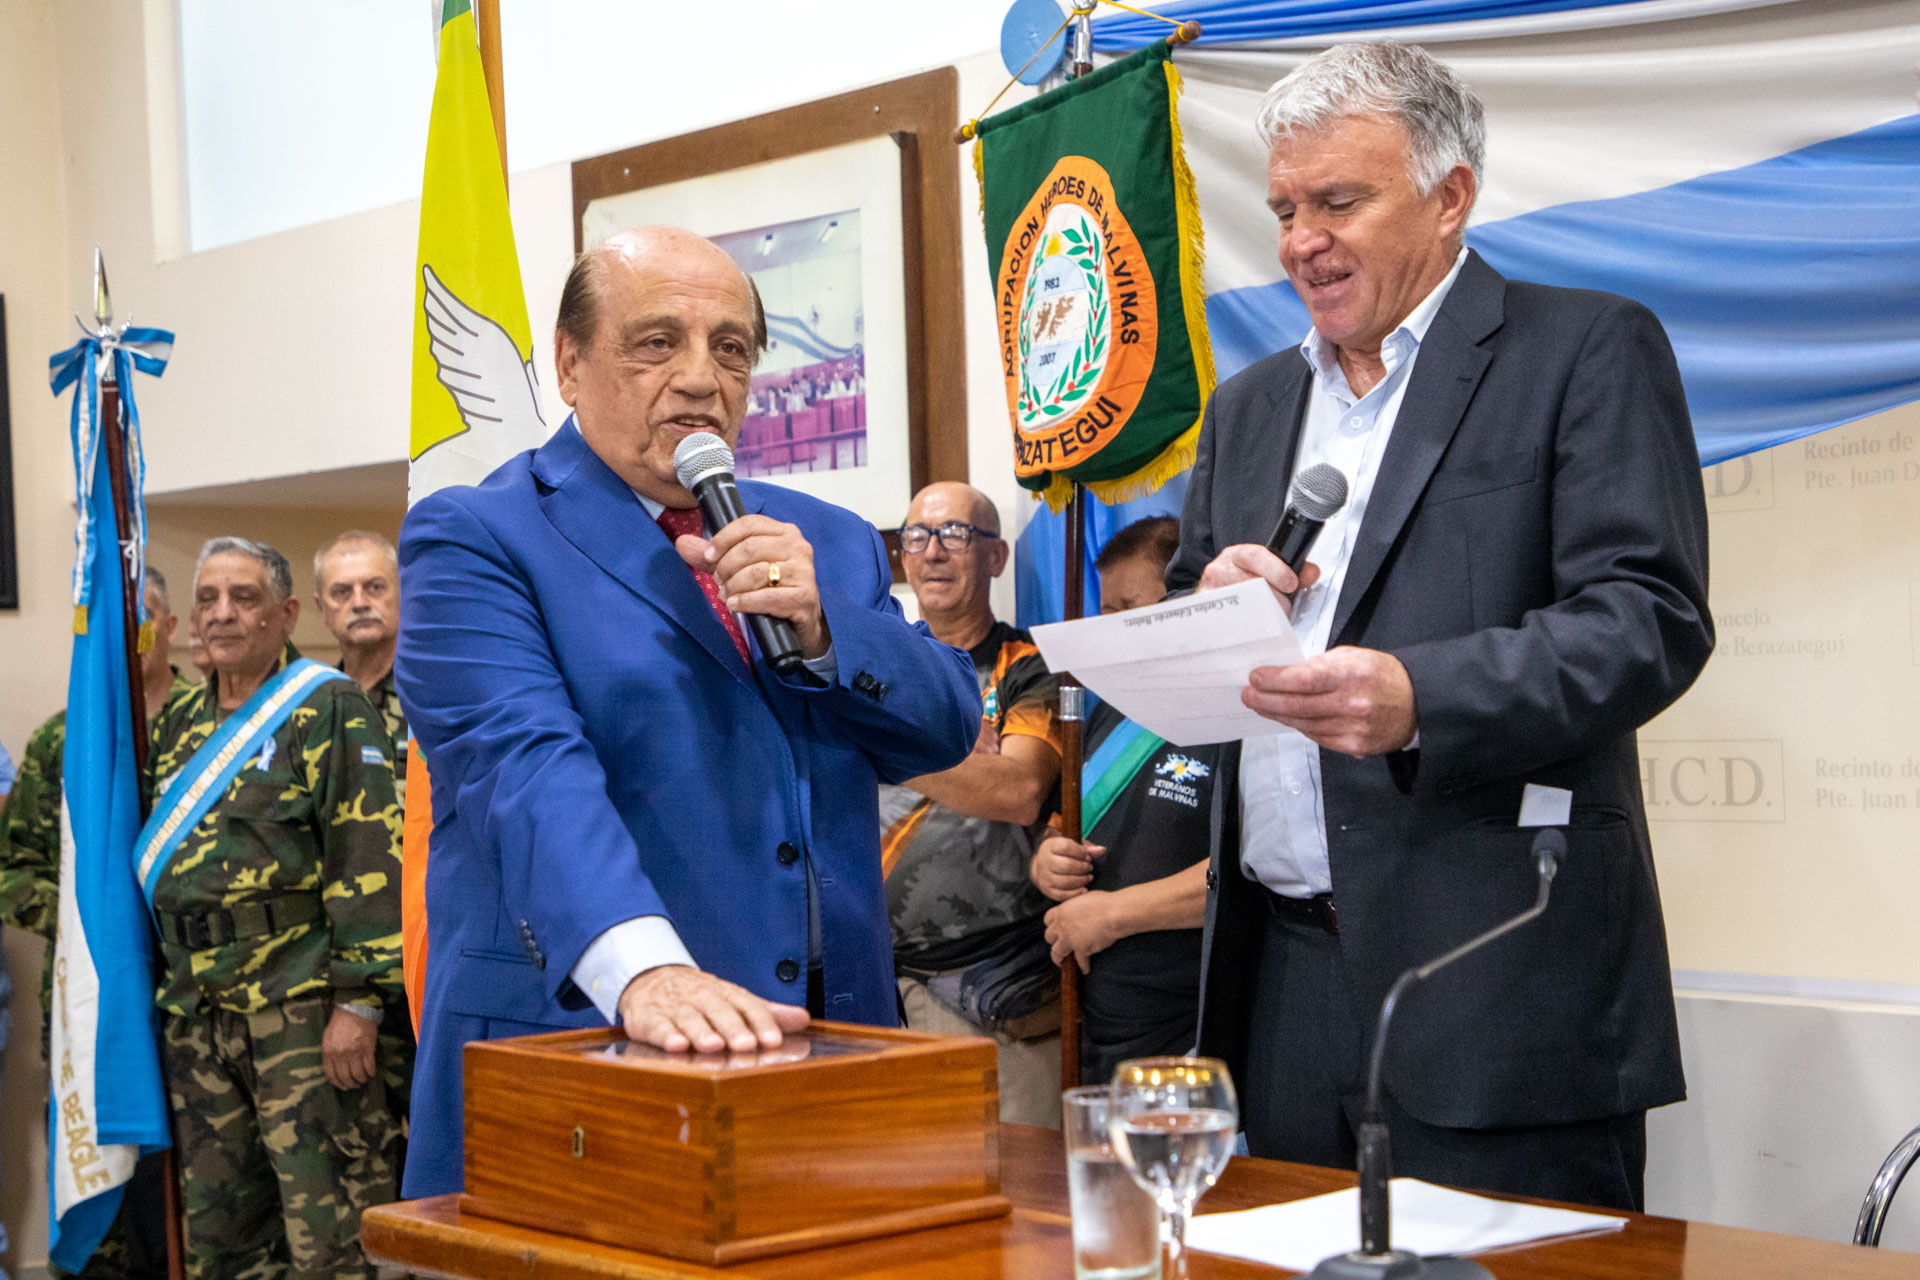 Mussi asumió su sexto mandato frente al municipio de Berazategui